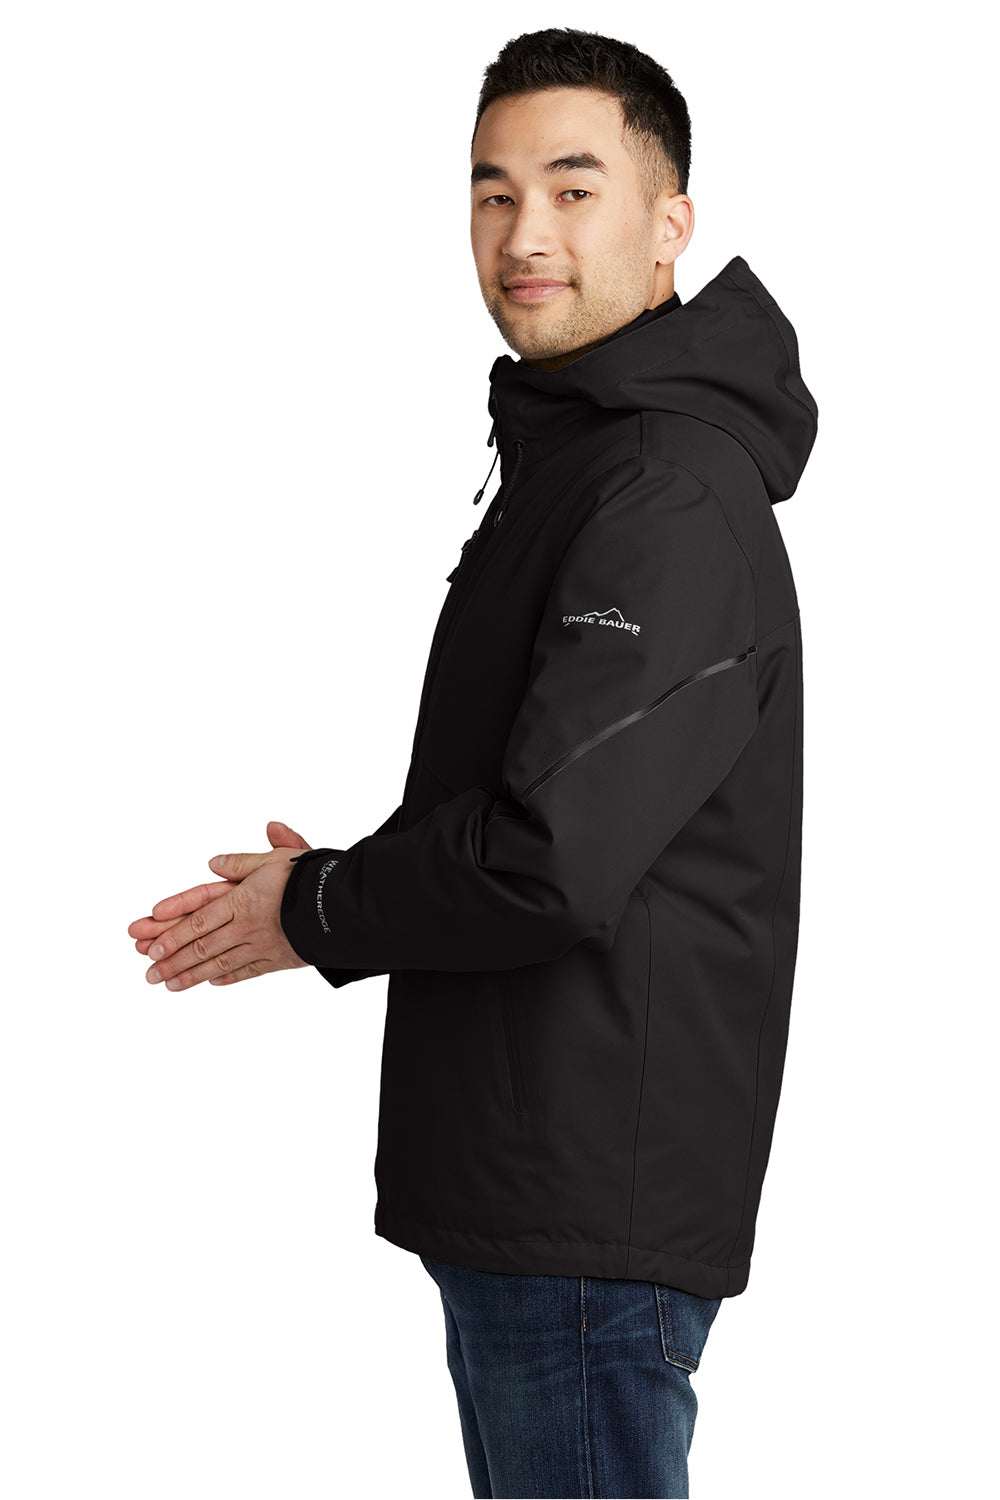 Eddie Bauer EB556 Mens WeatherEdge Plus 3-in-1 Waterproof Full Zip Hooded Jacket Black Model Side